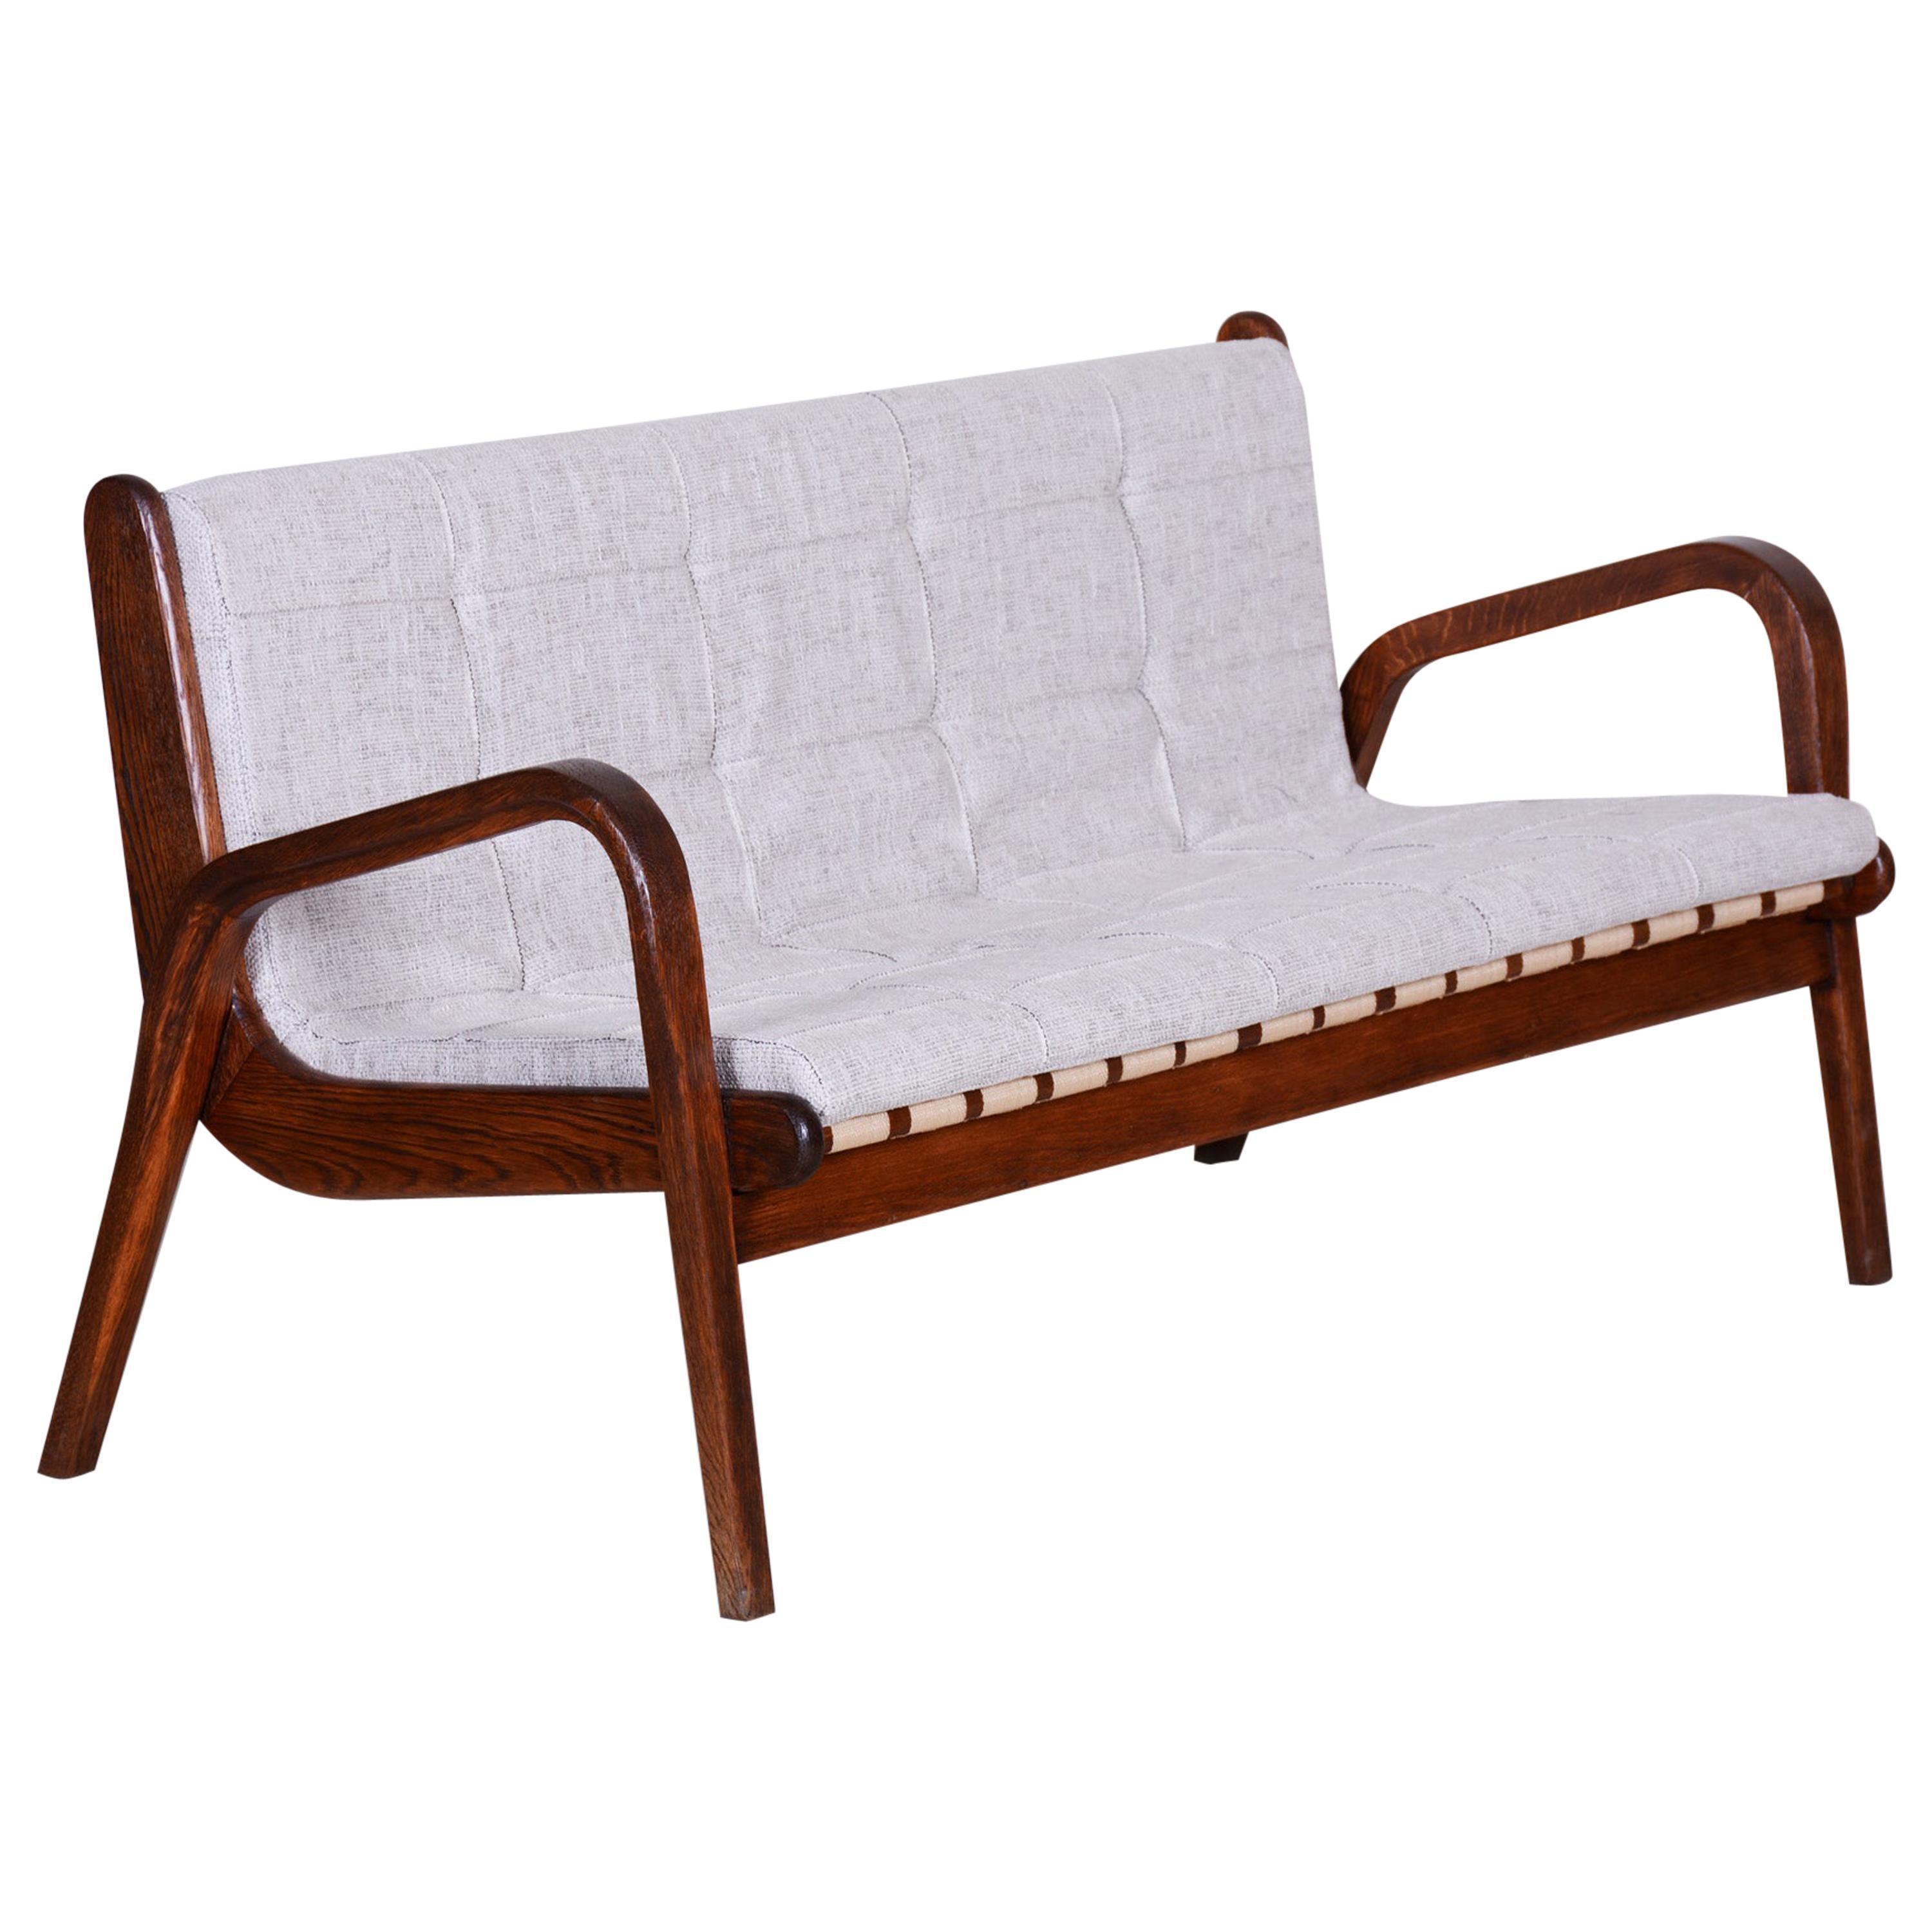 Tschechisches Midcentury-Sofa aus brauner Buche von Jan Vanek, neu gepolstert, 1950er Jahre